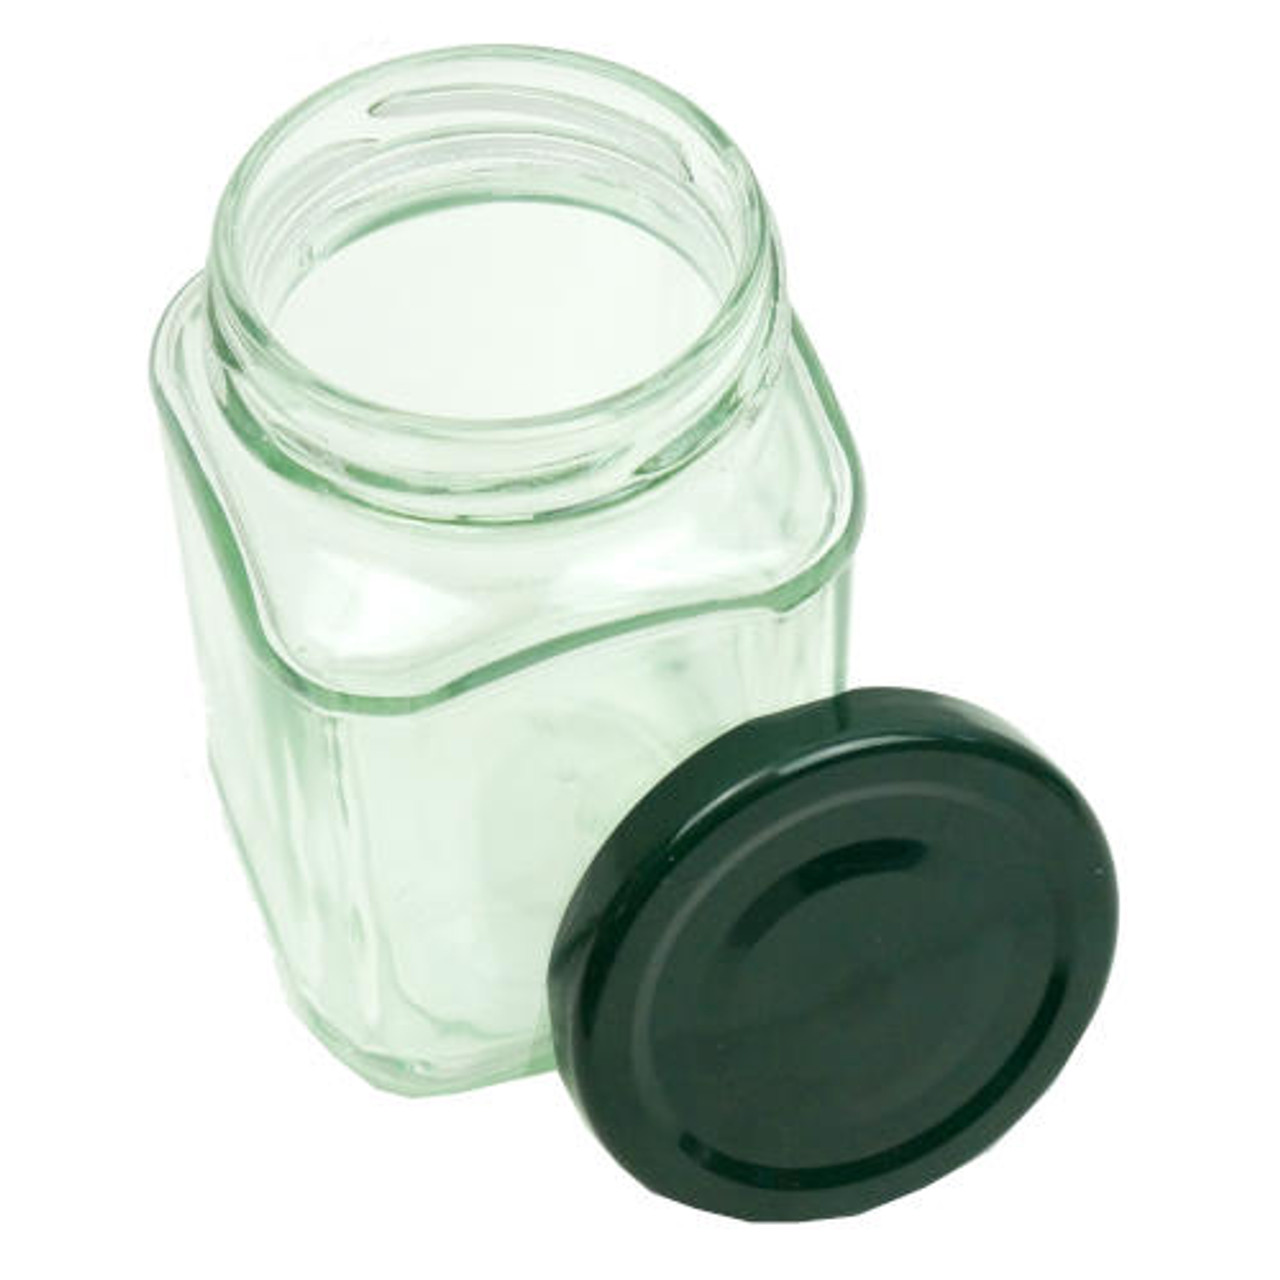 Cal-Mil Square Small Glass Jar - 4L x 4W x 4H